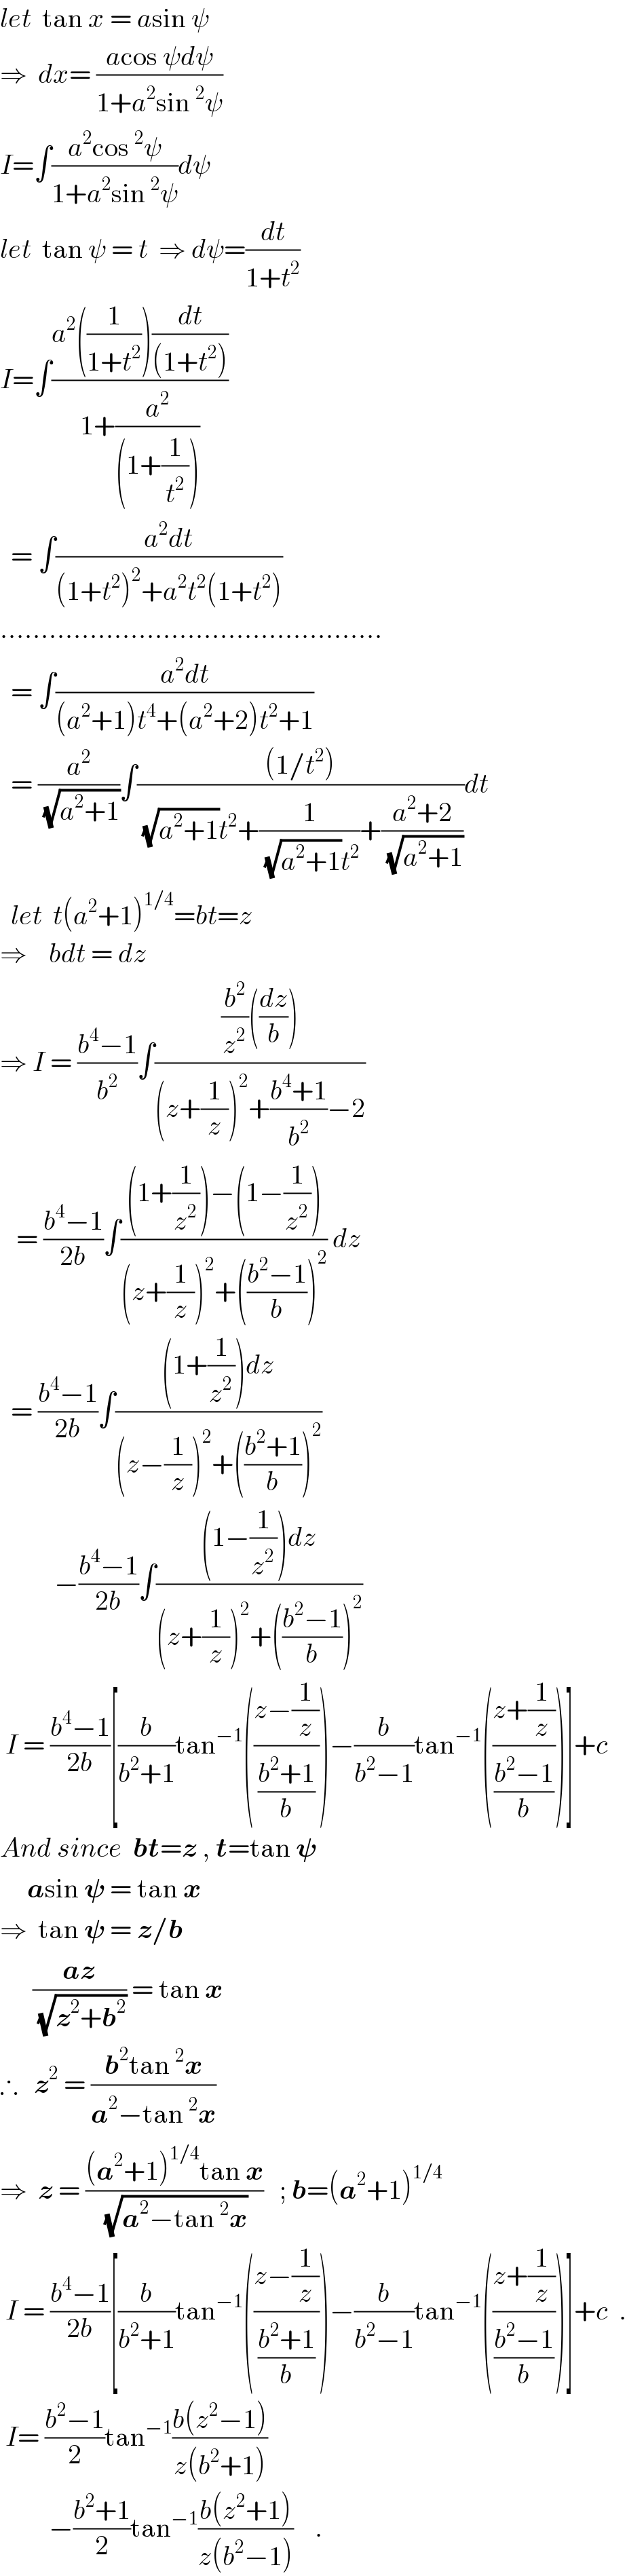 let  tan x = asin ψ  ⇒  dx= ((acos ψdψ)/(1+a^2 sin^2 ψ))  I=∫((a^2 cos^2 ψ)/(1+a^2 sin^2 ψ))dψ  let  tan ψ = t  ⇒ dψ=(dt/(1+t^2 ))  I=∫((a^2 ((1/(1+t^2 )))(dt/((1+t^2 ))))/(1+(a^2 /((1+(1/t^2 ))))))    = ∫((a^2 dt)/((1+t^2 )^2 +a^2 t^2 (1+t^2 )))  ...............................................    = ∫((a^2 dt)/((a^2 +1)t^4 +(a^2 +2)t^2 +1))    = (a^2 /(√(a^2 +1)))∫(((1/t^2 ))/((√(a^2 +1))t^2 +(1/((√(a^2 +1))t^2 ))+((a^2 +2)/(√(a^2 +1)))))dt    let  t(a^2 +1)^(1/4) =bt=z  ⇒    bdt = dz  ⇒ I = ((b^4 −1)/b^2 )∫(((b^2 /z^2 )((dz/b)))/((z+(1/z))^2 +((b^4 +1)/b^2 )−2))     = ((b^4 −1)/(2b))∫(((1+(1/z^2 ))−(1−(1/z^2 )))/((z+(1/z))^2 +(((b^2 −1)/b))^2 )) dz    = ((b^4 −1)/(2b))∫(((1+(1/z^2 ))dz)/((z−(1/z))^2 +(((b^2 +1)/b))^2 ))            −((b^4 −1)/(2b))∫(((1−(1/z^2 ))dz)/((z+(1/z))^2 +(((b^2 −1)/b))^2 ))   I = ((b^4 −1)/(2b))[(b/(b^2 +1))tan^(−1) (((z−(1/z))/((b^2 +1)/b)))−(b/(b^2 −1))tan^(−1) (((z+(1/z))/((b^2 −1)/b)))]+c  And since  bt=z , t=tan 𝛙       asin 𝛙 = tan x  ⇒  tan 𝛙 = z/b        ((az)/(√(z^2 +b^2 ))) = tan x  ∴   z^2  = ((b^2 tan^2 x)/(a^2 −tan^2 x))  ⇒  z = (((a^2 +1)^(1/4) tan x)/(√(a^2 −tan^2 x)))   ; b=(a^2 +1)^(1/4)    I = ((b^4 −1)/(2b))[(b/(b^2 +1))tan^(−1) (((z−(1/z))/((b^2 +1)/b)))−(b/(b^2 −1))tan^(−1) (((z+(1/z))/((b^2 −1)/b)))]+c  .   I= ((b^2 −1)/2)tan^(−1) ((b(z^2 −1))/(z(b^2 +1)))              −((b^2 +1)/2)tan^(−1) ((b(z^2 +1))/(z(b^2 −1)))    .  